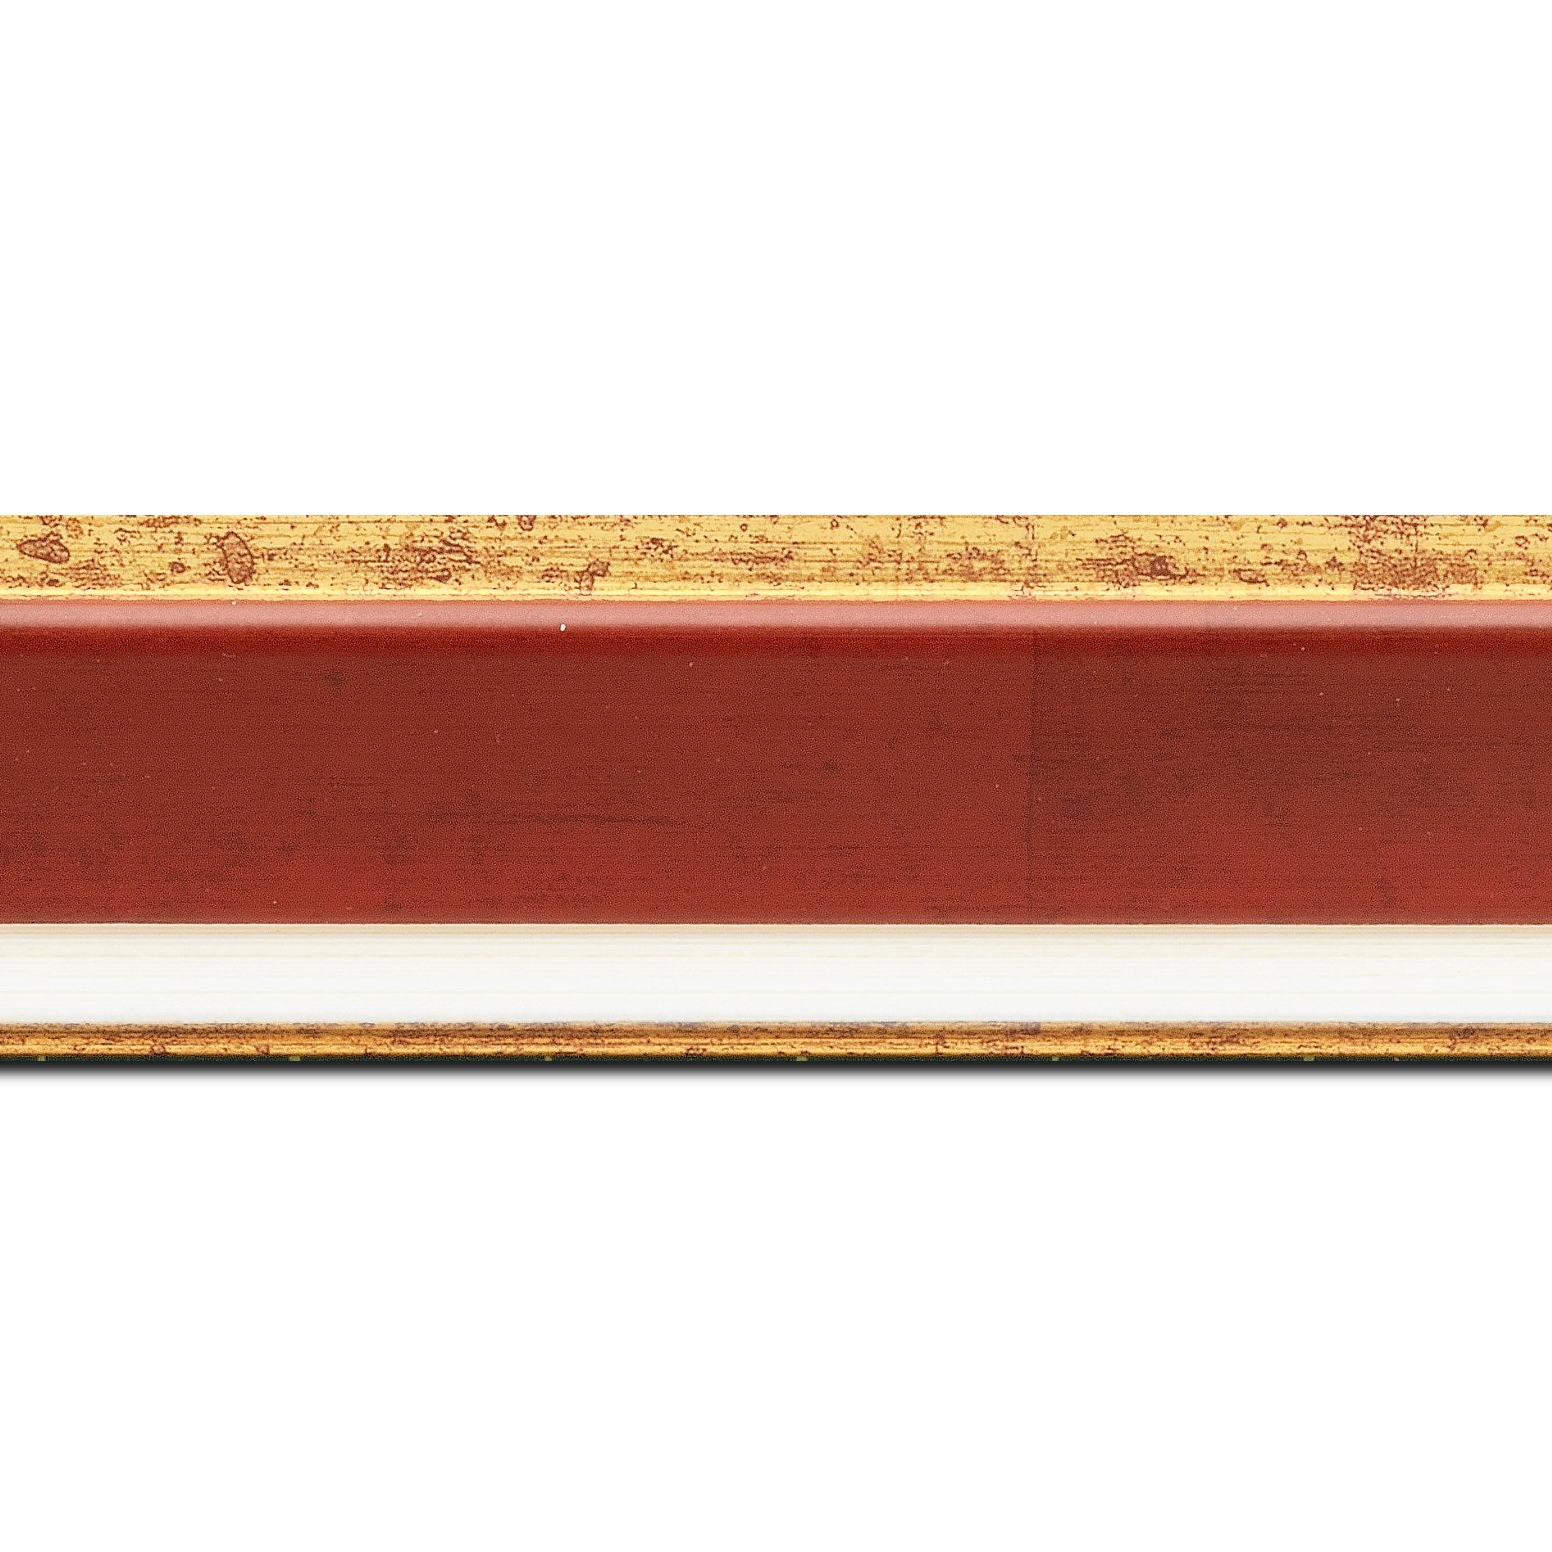 Baguette longueur 1.40m bois profil incliné largeur 5.4cm couleur bordeaux marie louise crème filet or intégrée